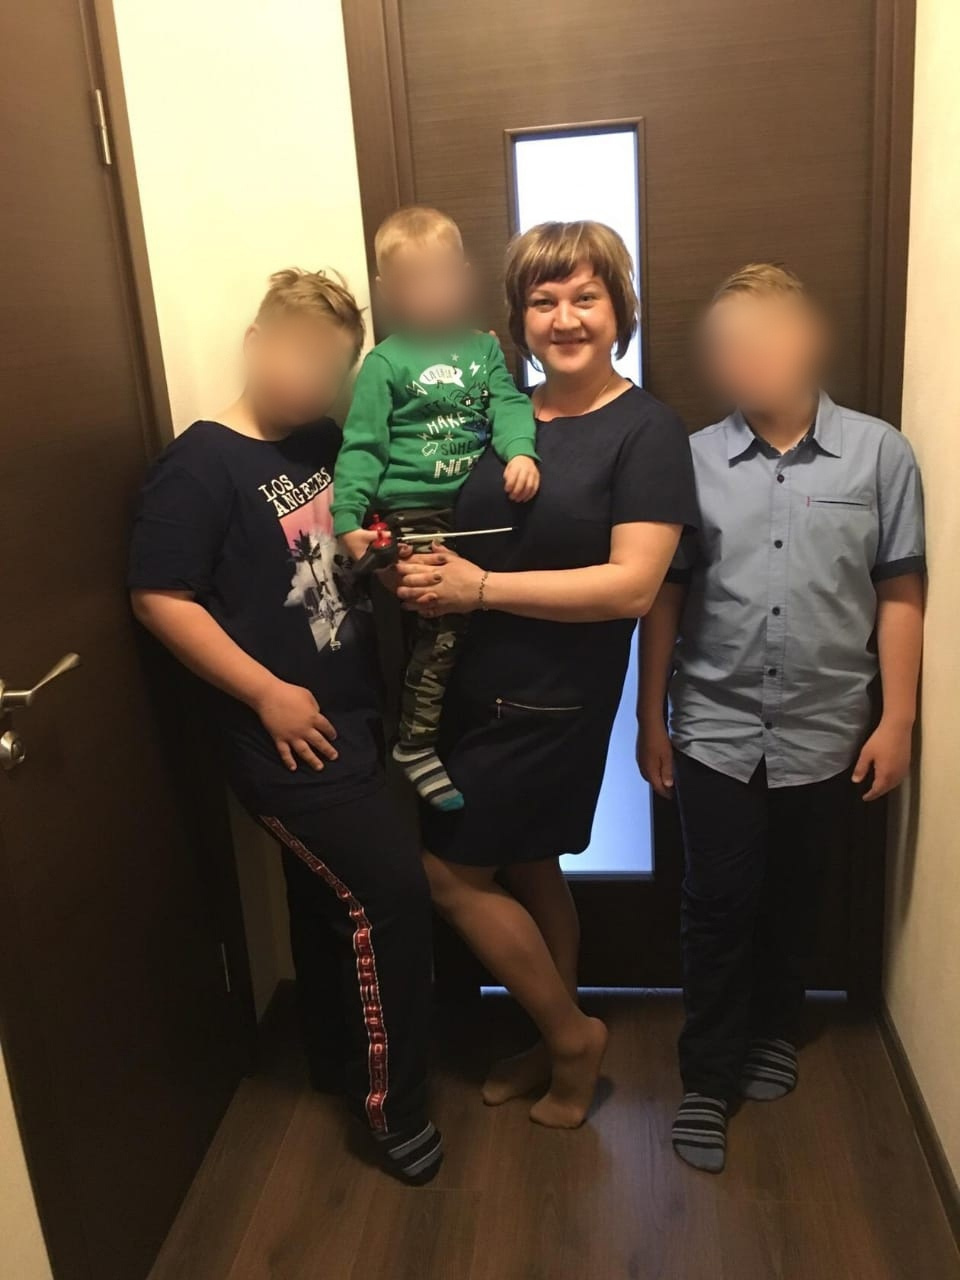 Семья погибших — мать Ольга и трое детей. На момент аварии им было 12, 11 и 3 года.